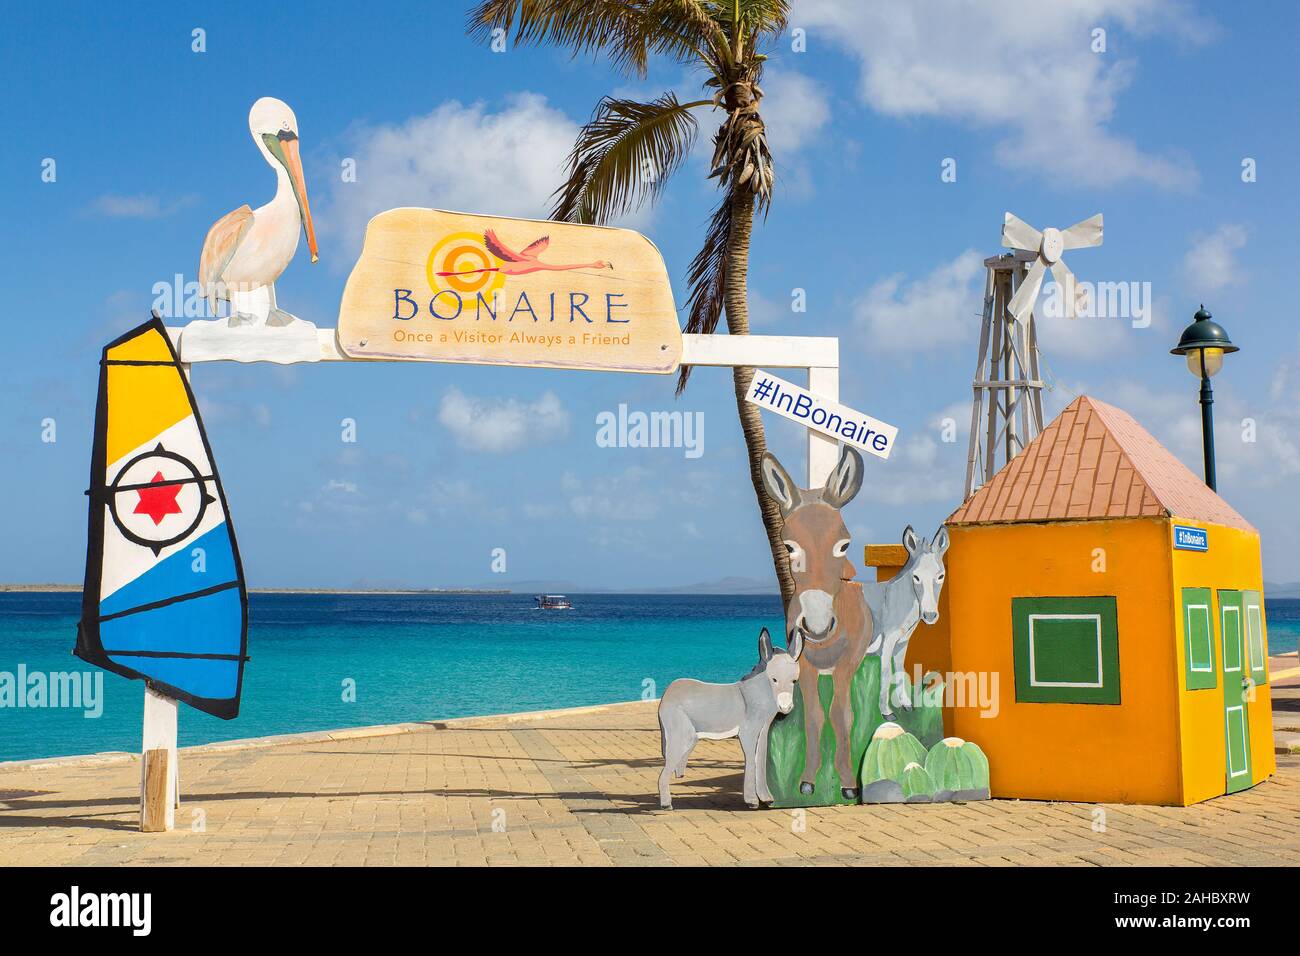 Bienvenido foto in situ como destino turístico en la costa en la isla de Bonaire Foto de stock